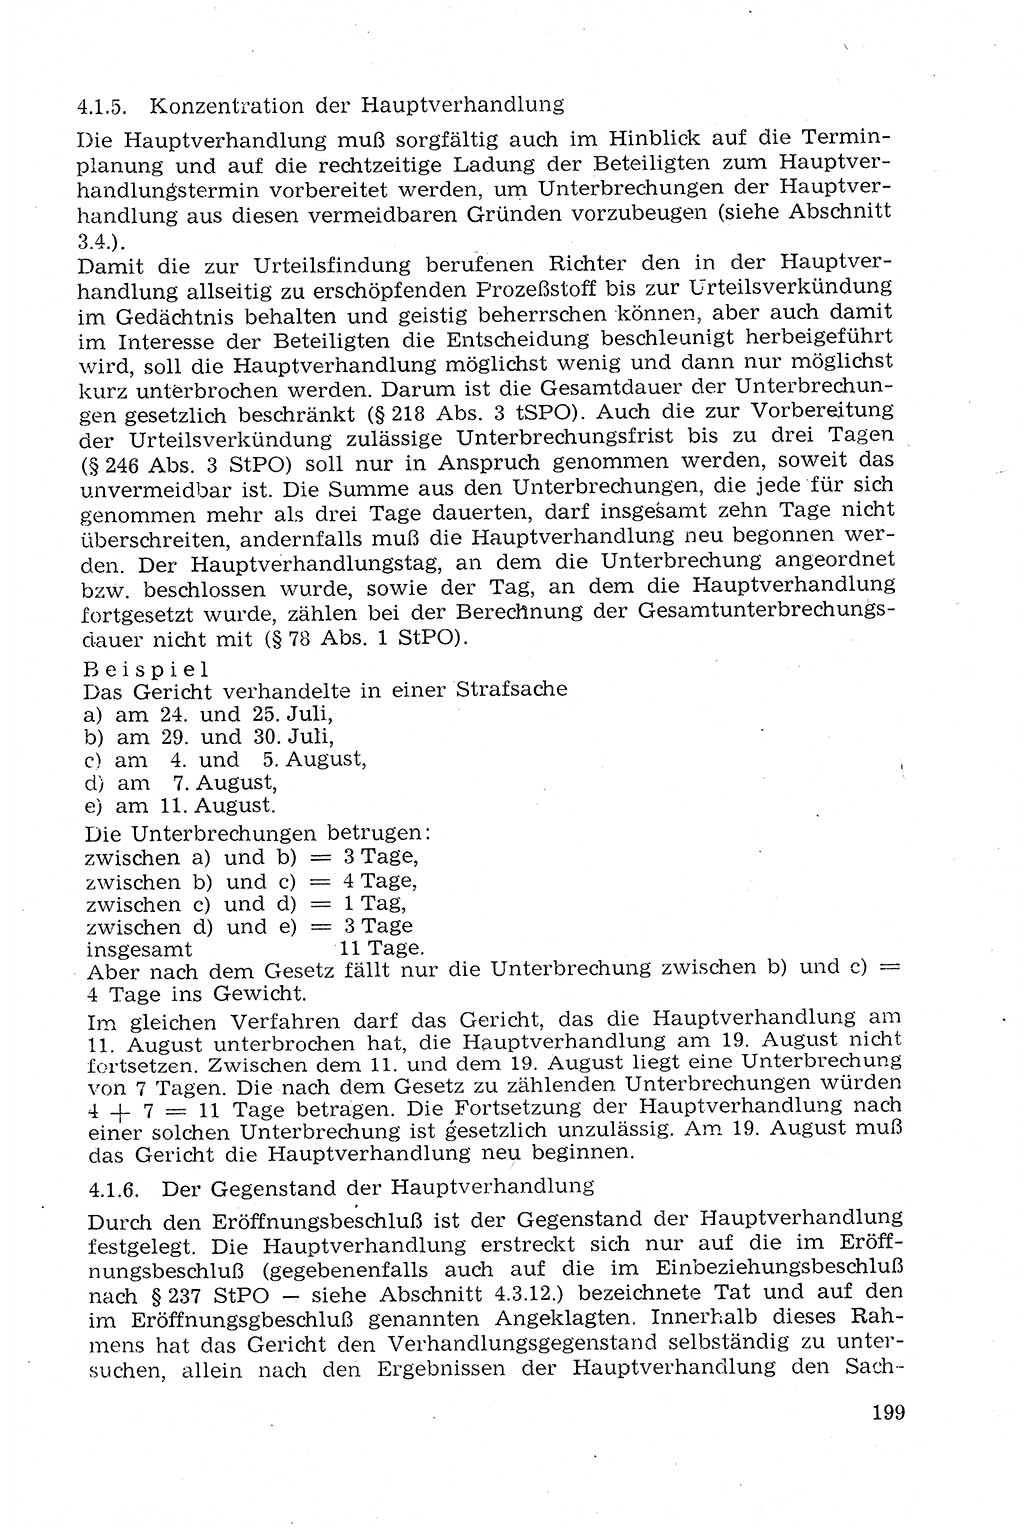 Strafprozeßrecht der DDR (Deutsche Demokratische Republik), Lehrmaterial 1969, Seite 199 (Strafprozeßr. DDR Lehrmat. 1969, S. 199)